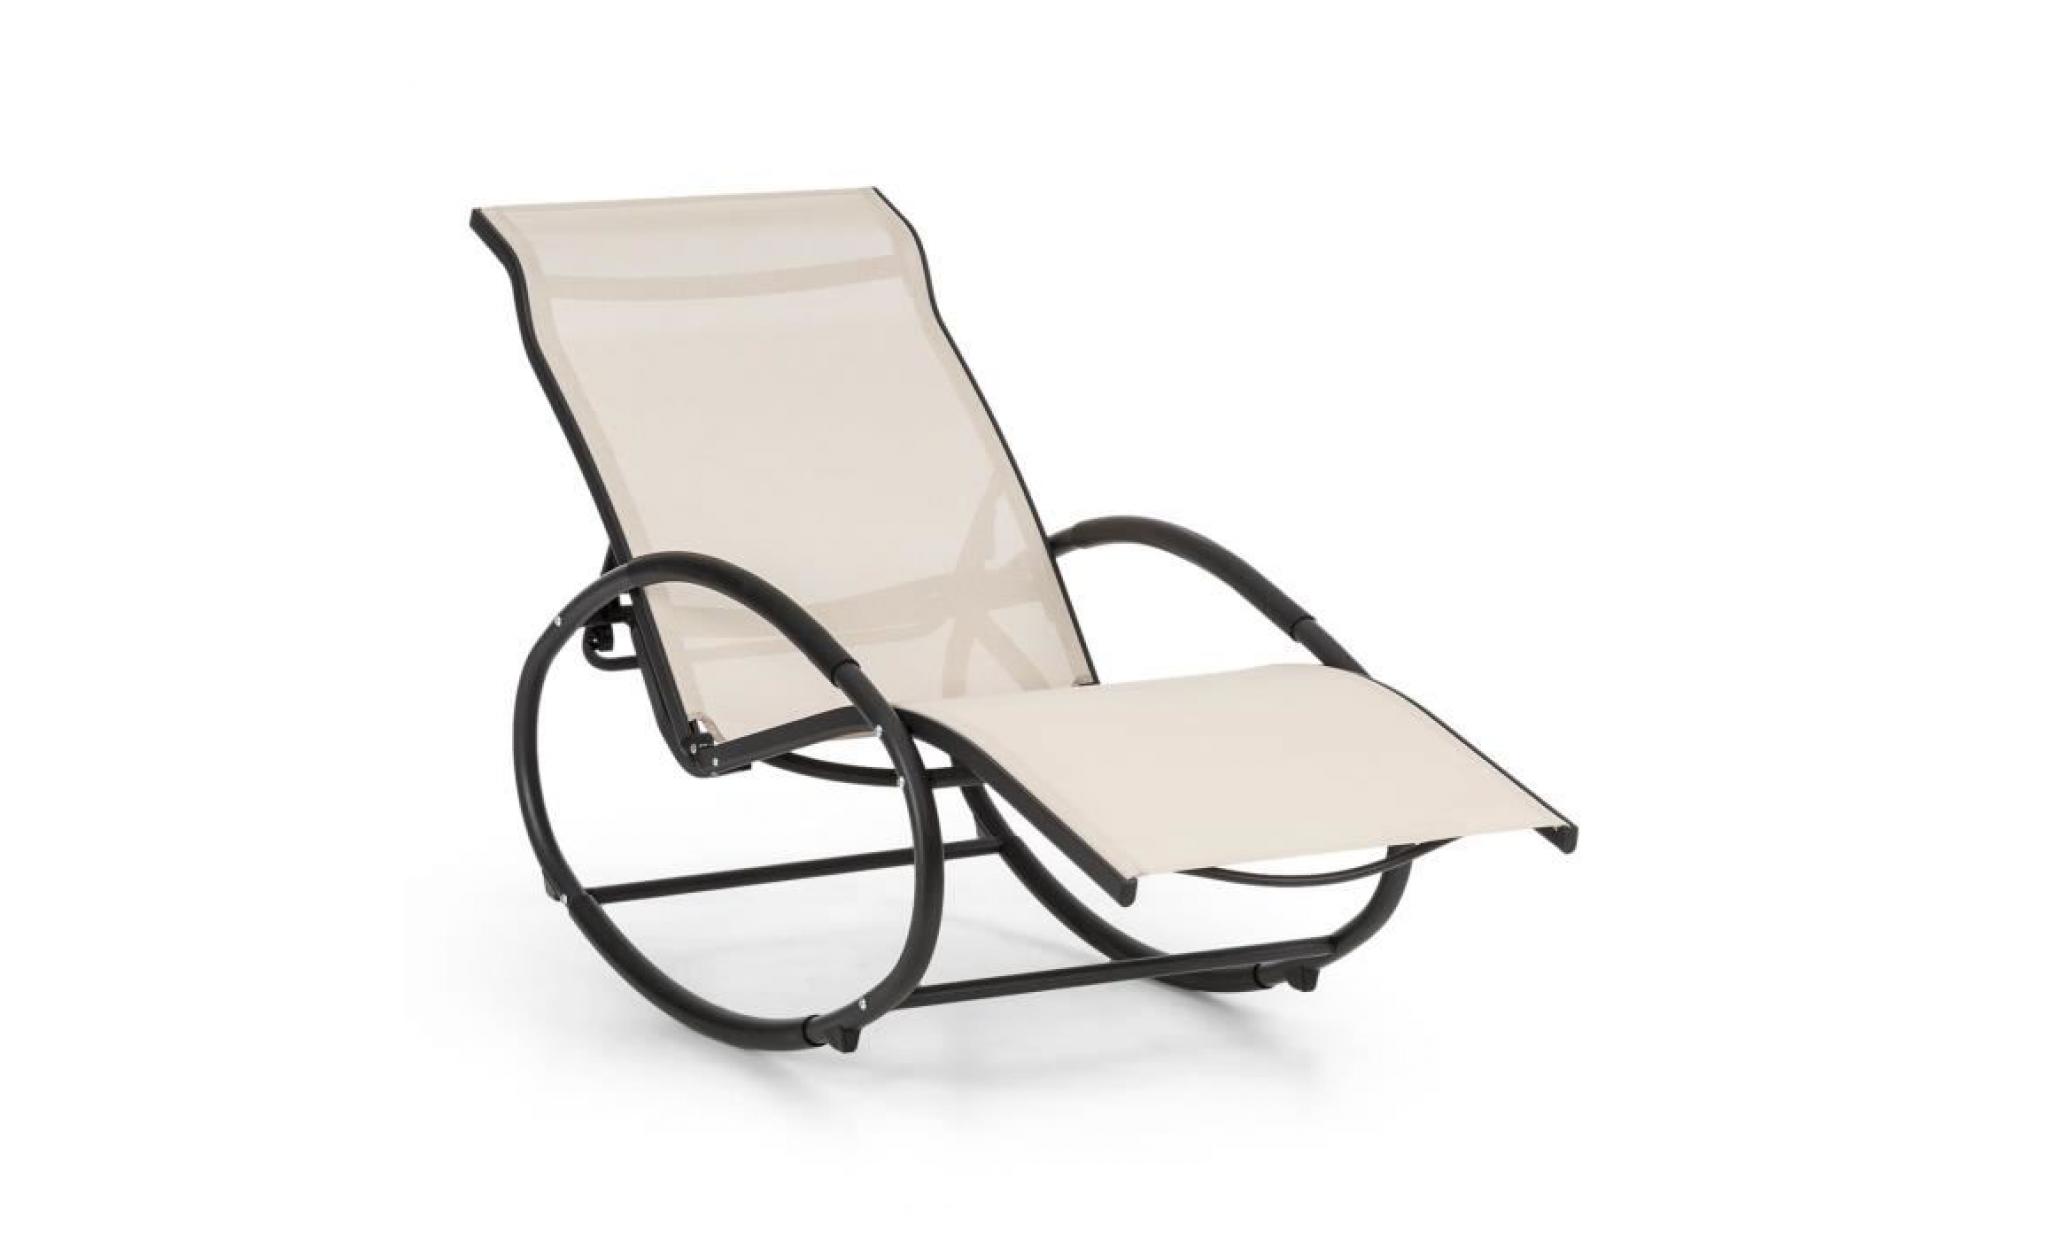 blumfeldt santorini fauteuil à bascule de jardin , chaise longue style rocking chair   tube aluminium   revêtement polyester   beige